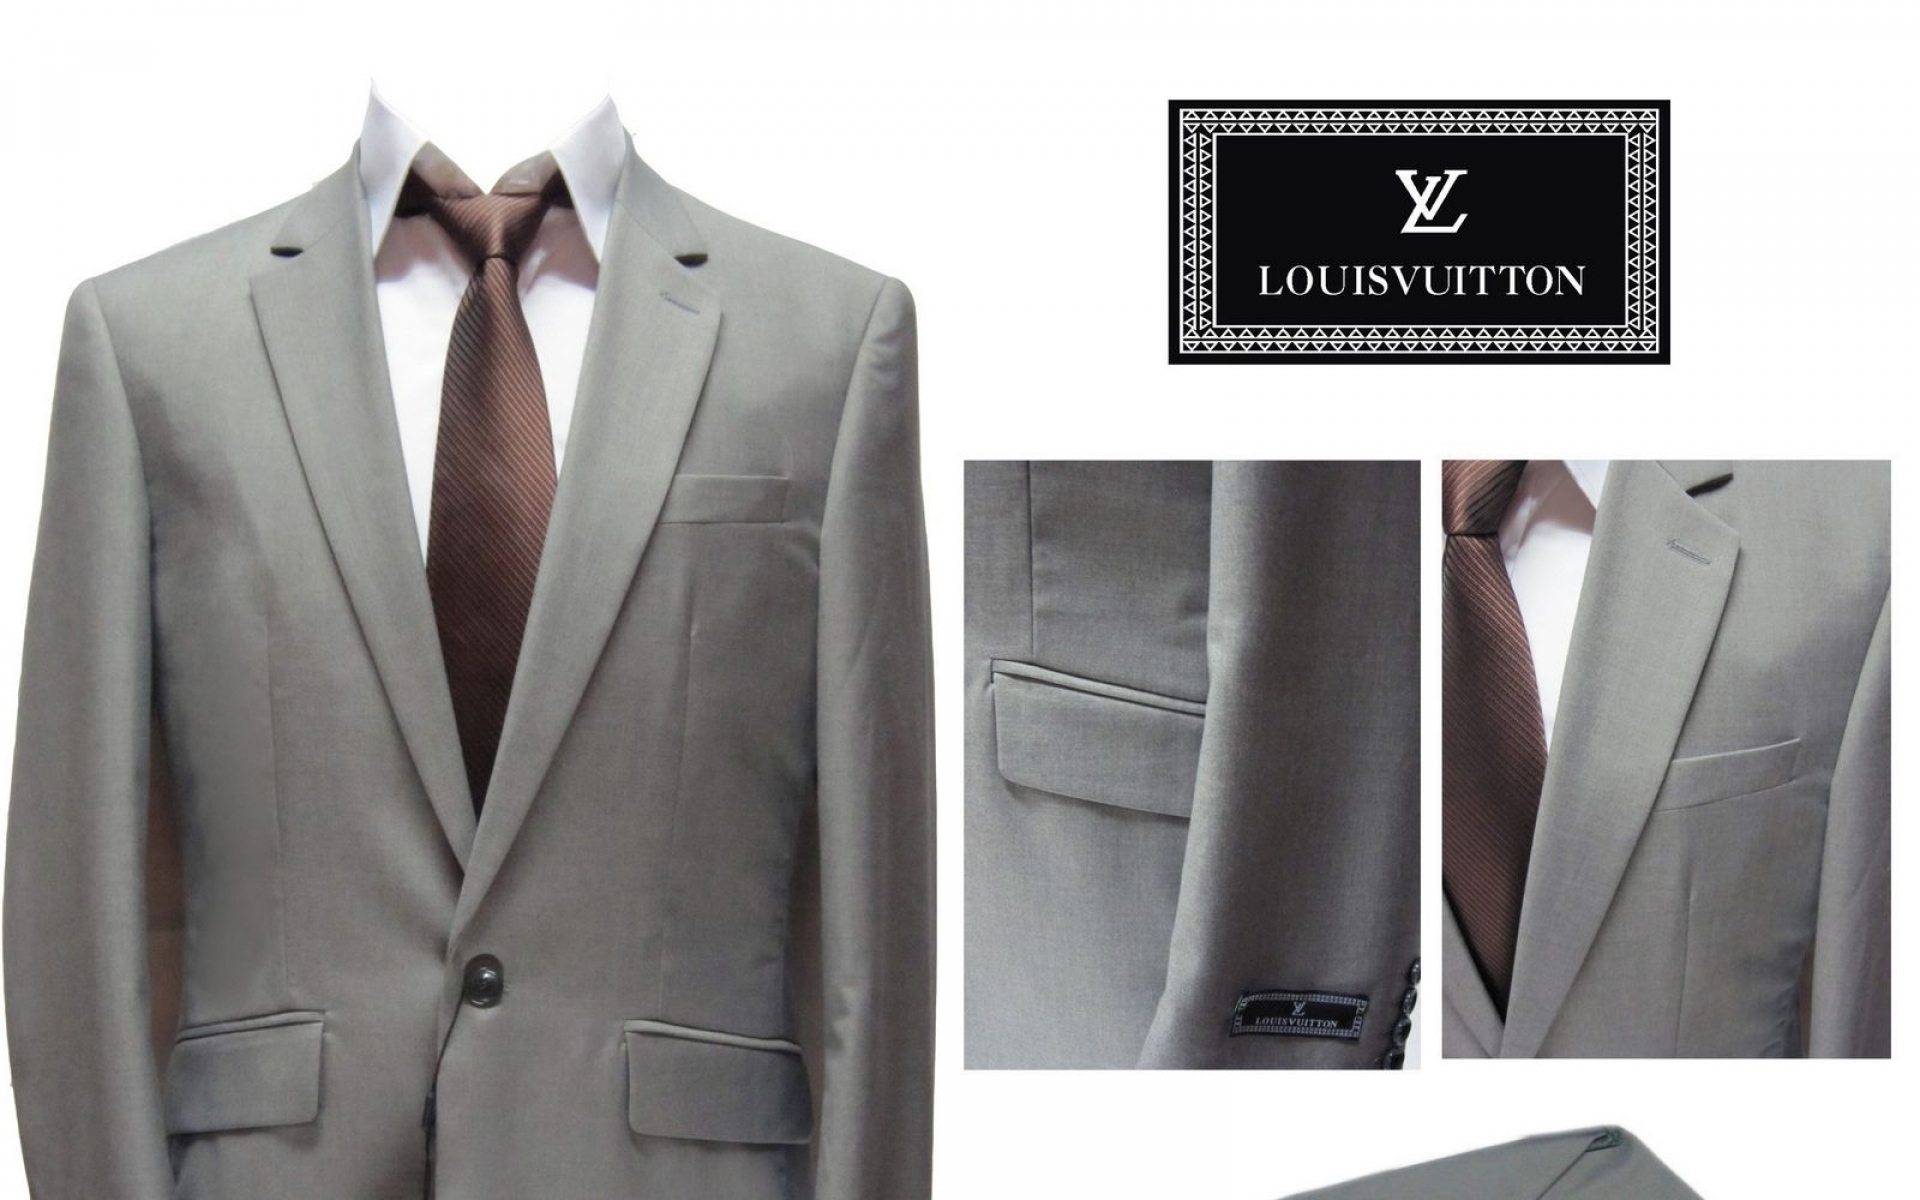 Картинки Louis vuitton, мужской костюм, пальто, галстук, рубашка фото и обои на рабочий стол